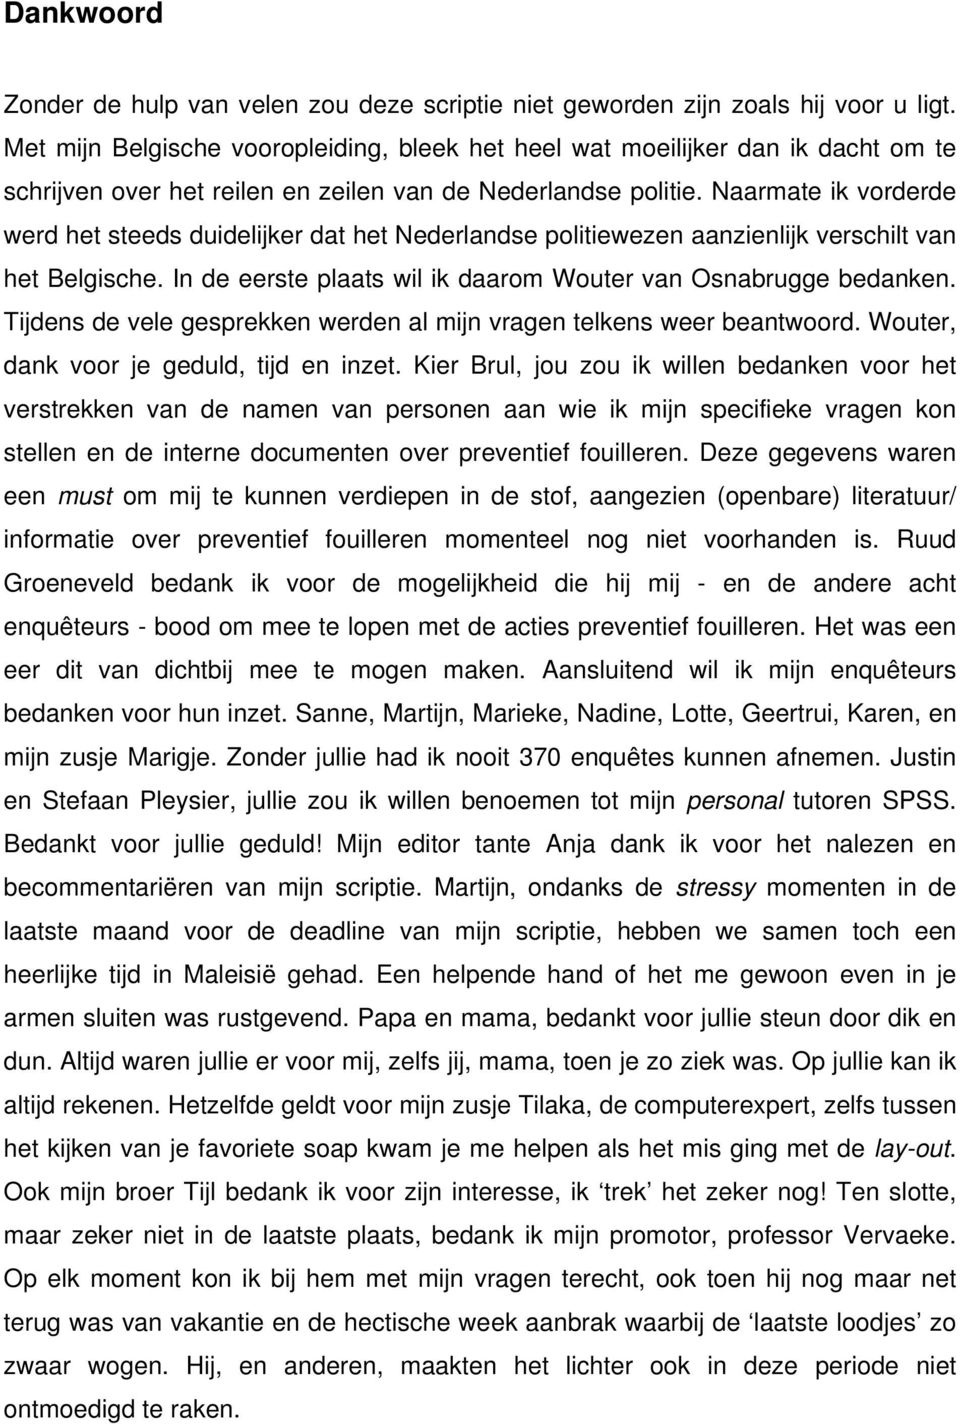 Naarmate ik vorderde werd het steeds duidelijker dat het Nederlandse politiewezen aanzienlijk verschilt van het Belgische. In de eerste plaats wil ik daarom Wouter van Osnabrugge bedanken.